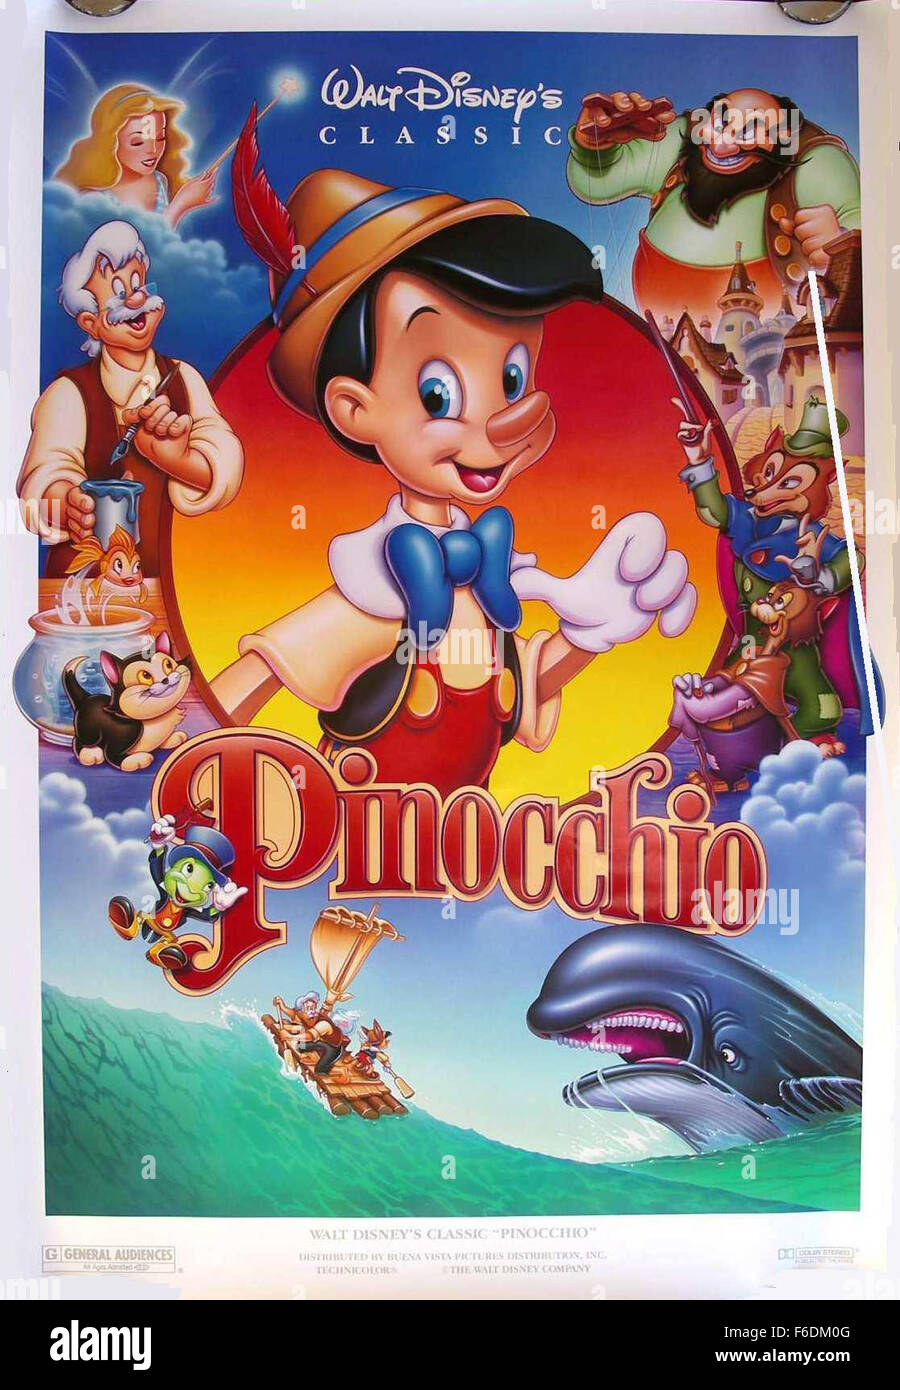 Fecha de Publicación: 9 de febrero de 1940. Película: Pinocho. Estudio:  Walt Disney Productions. Parcela: Inventor Gepetto crea una marioneta de  madera llamada Pinocho. Su deseo de que sea un verdadero Pinocho